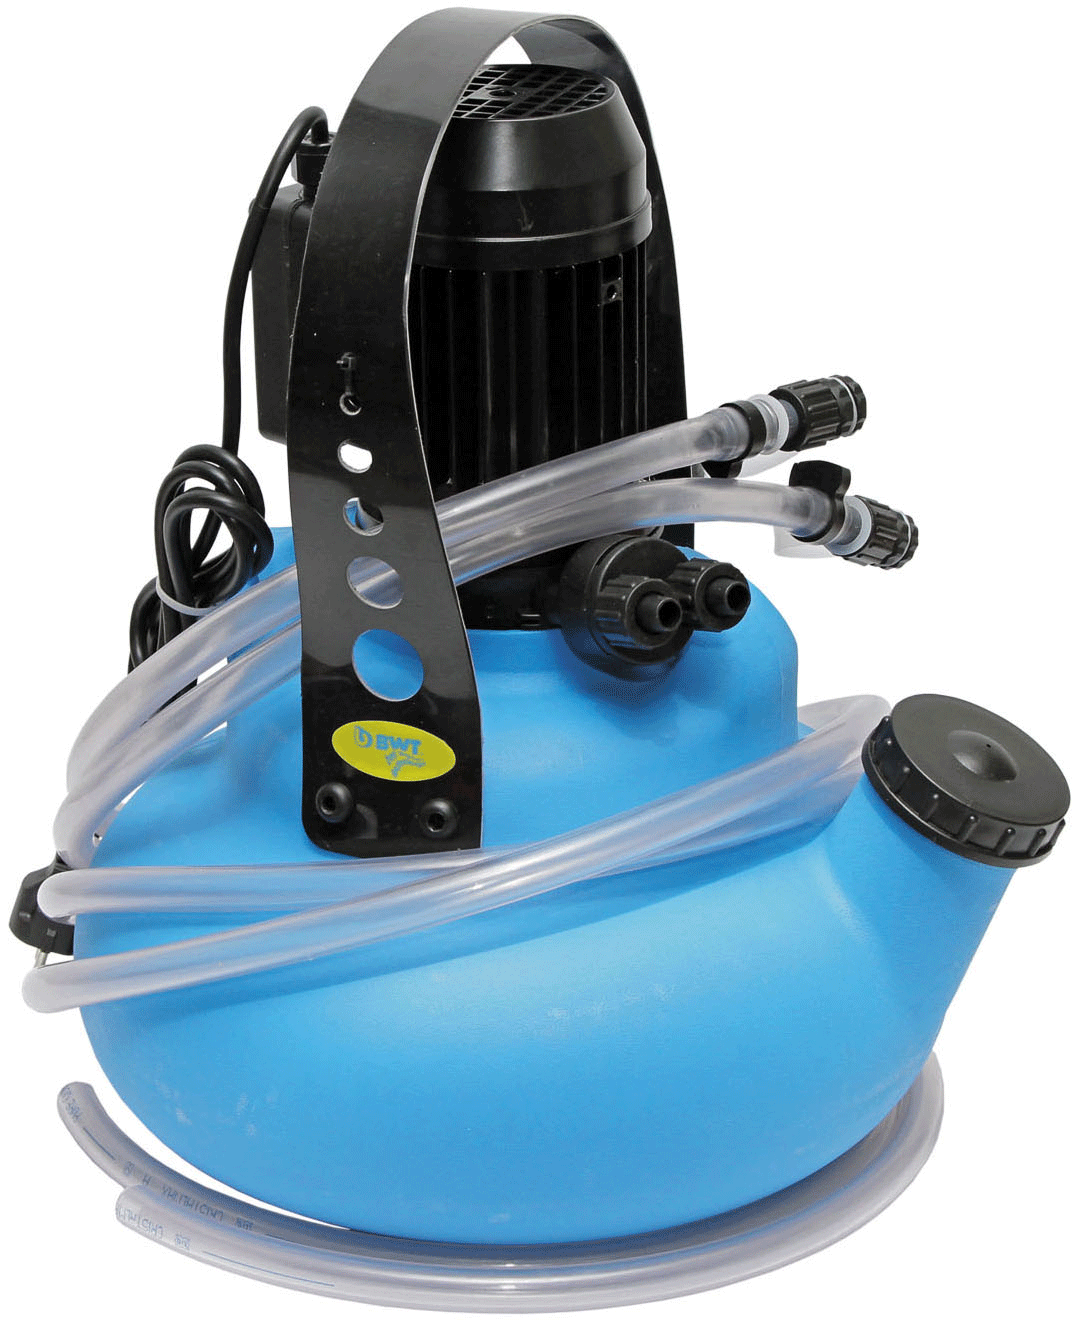 L810 Tea-Pot Химический насос для промывки теплообменников, очистки бойлеров, мойки котлов